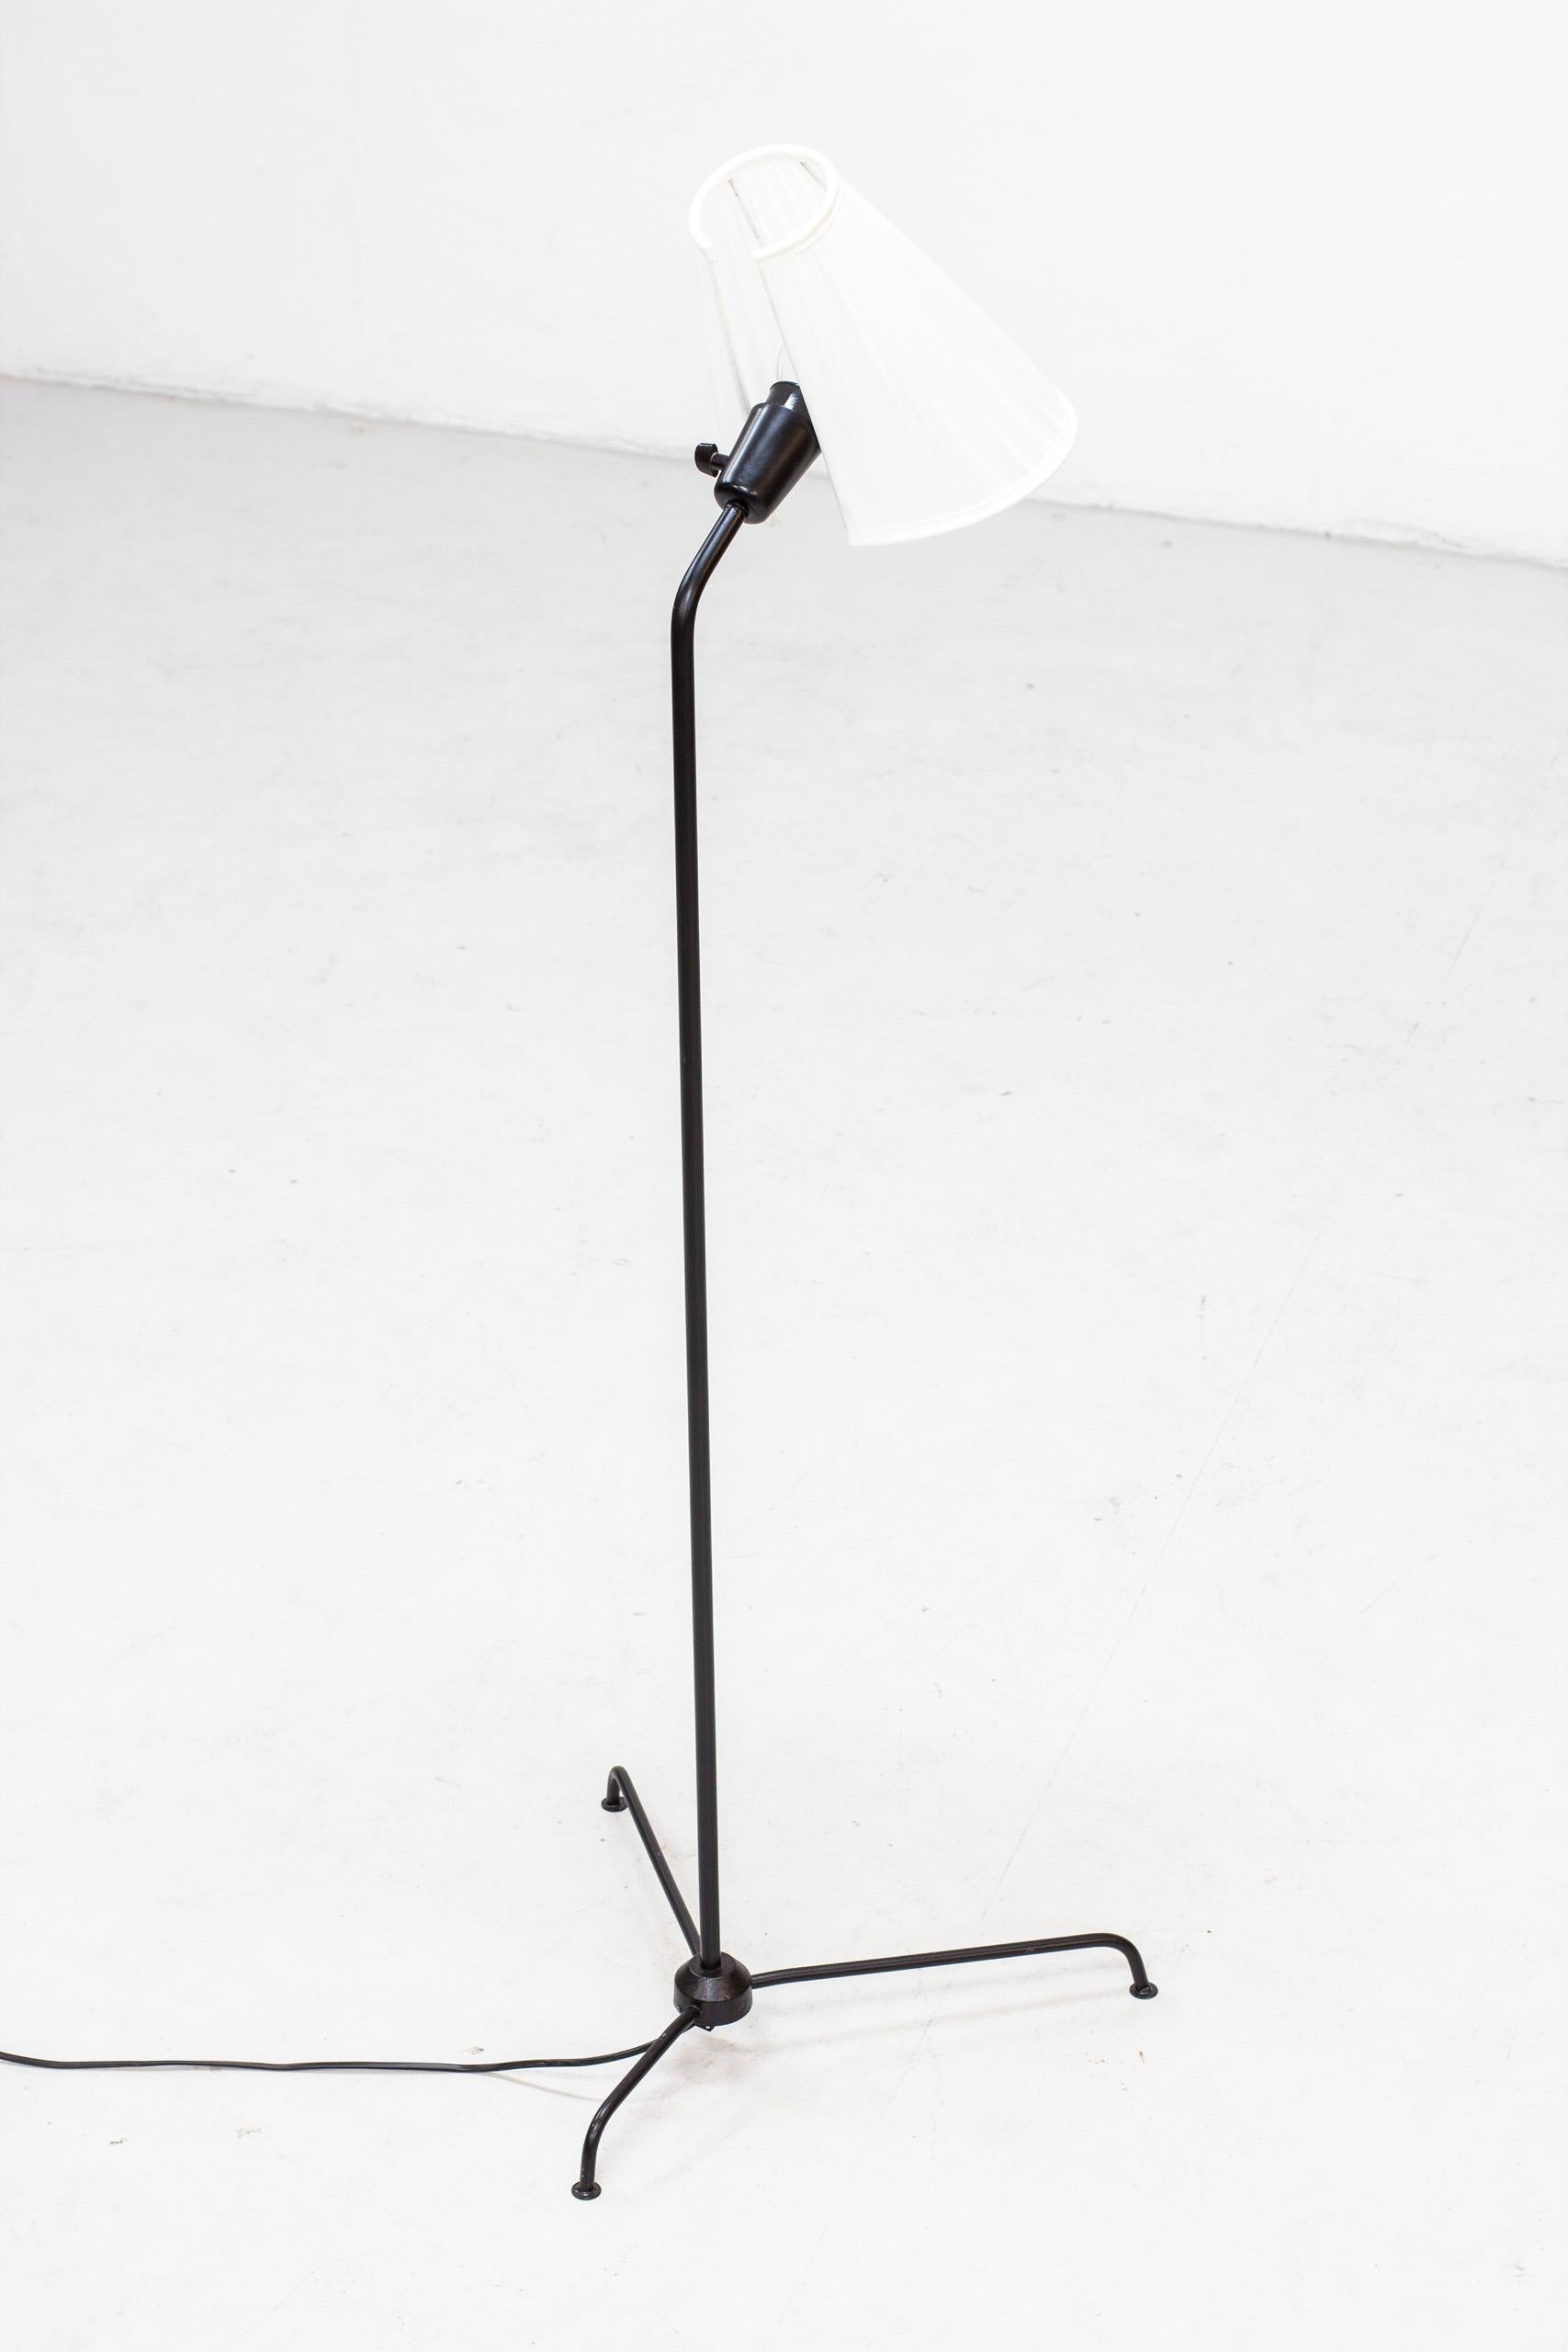 Lampadaire conçu par Eje Ahlgren, produit en Suède par Luco dans les années 1950. Fabriqué en métal laqué noir avec abat-jour d'origine remeublé en tissu chintz blanc. Interrupteur d'origine sur le luminaire en état de marche. Très bon état vintage